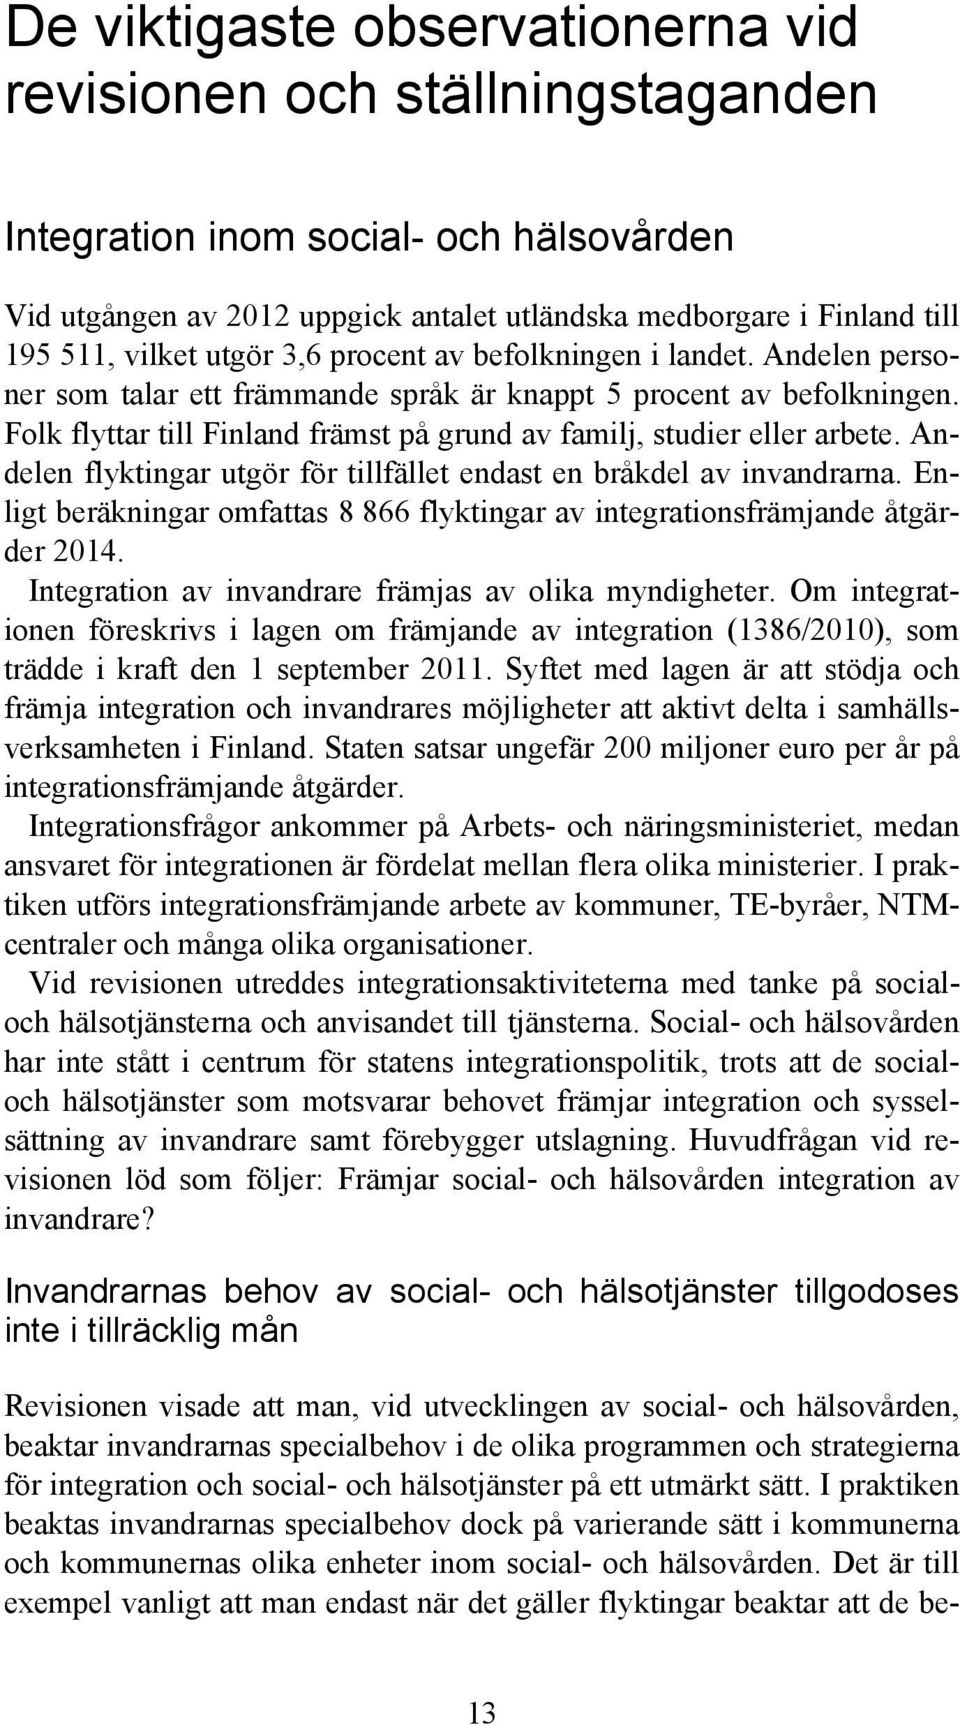 Folk flyttar till Finland främst på grund av familj, studier eller arbete. Andelen flyktingar utgör för tillfället endast en bråkdel av invandrarna.